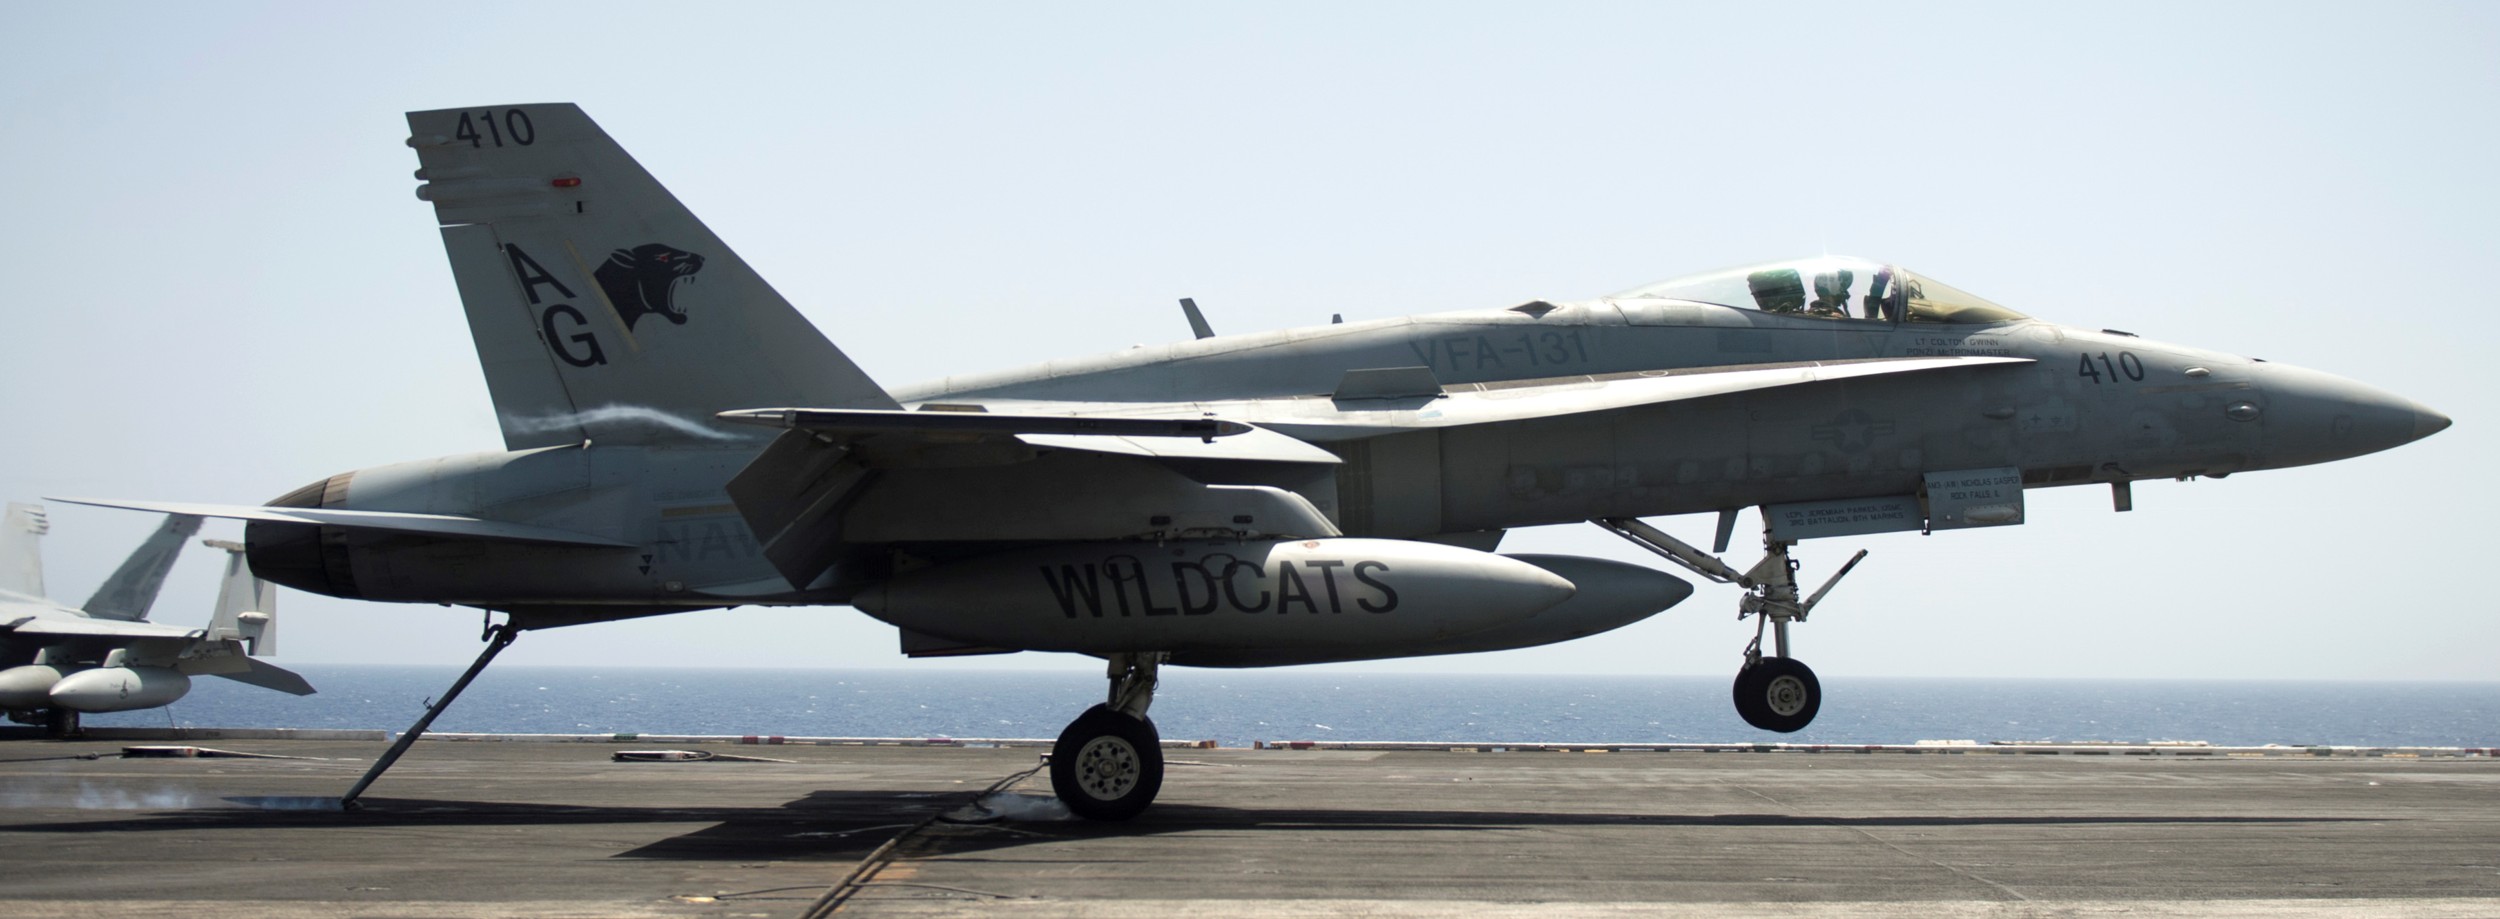 vfa-131 wildcats strike fighter squadron f/a-18c hornet cvw-7 uss dwight d. eisenhower cvn-69 2013 41